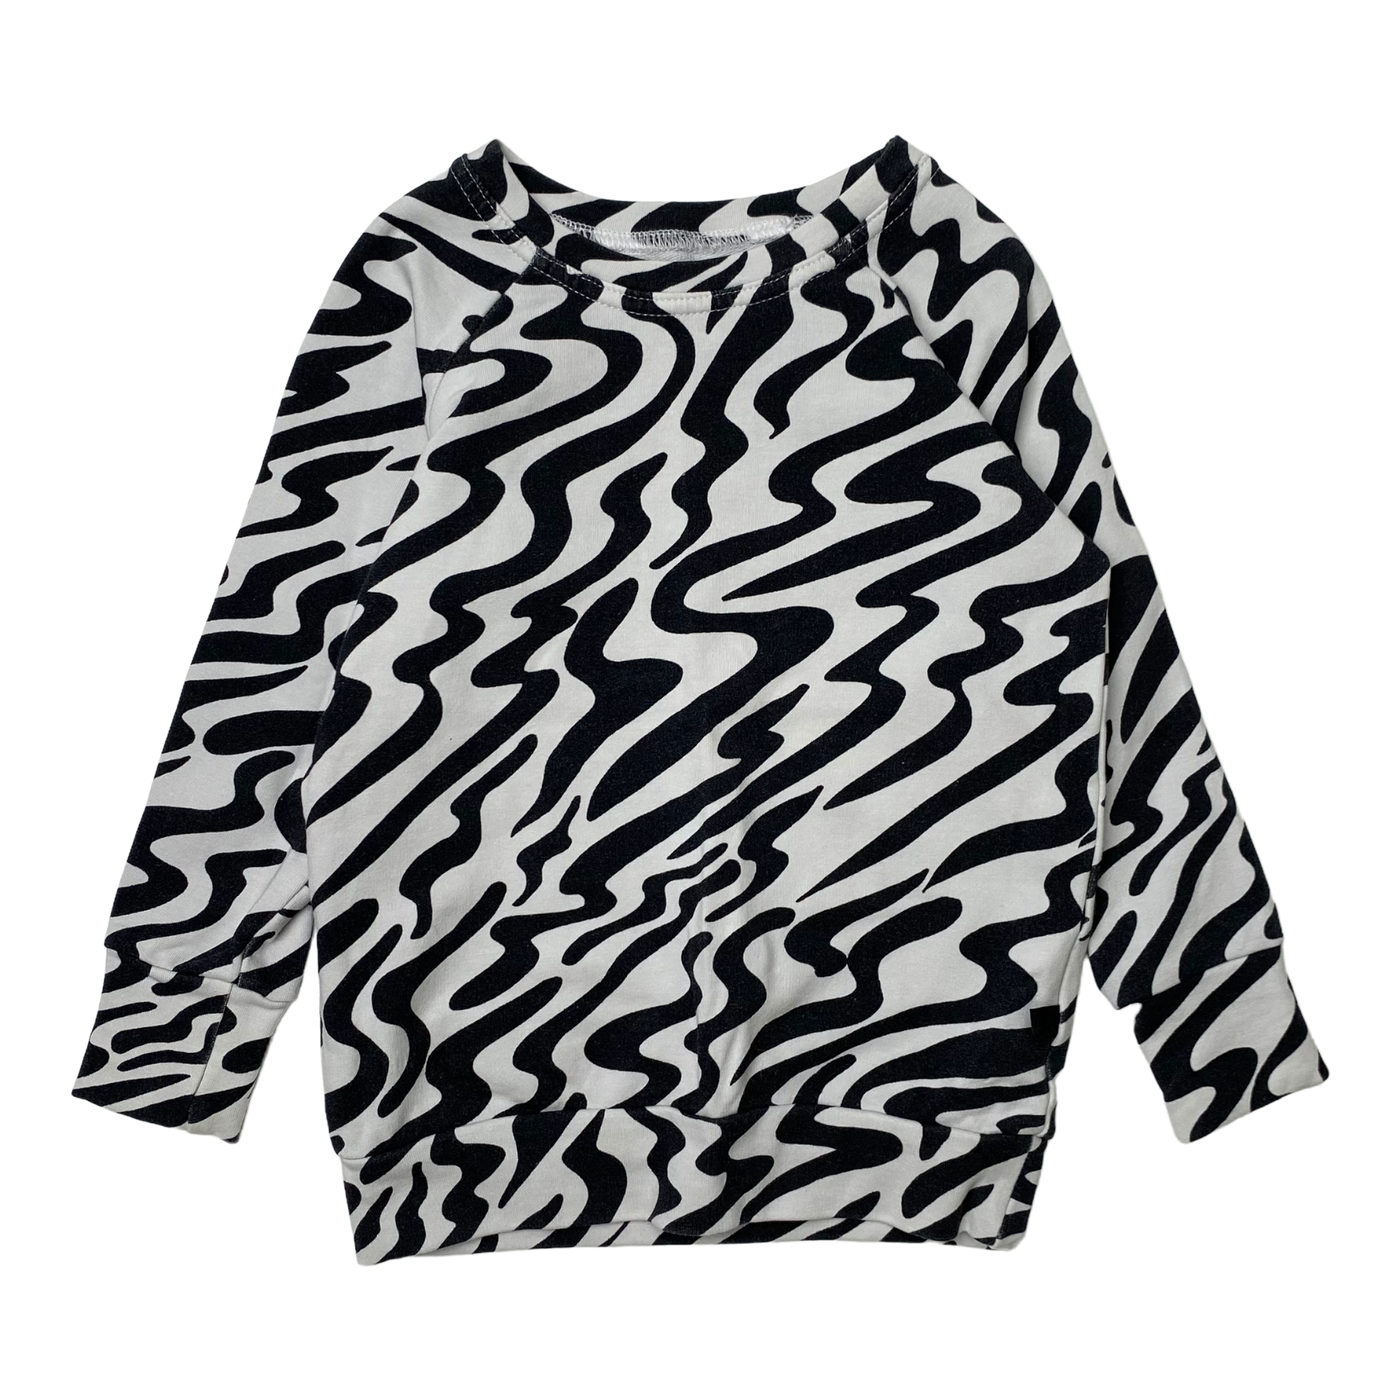 Vimma shirt, zebra | 90cm